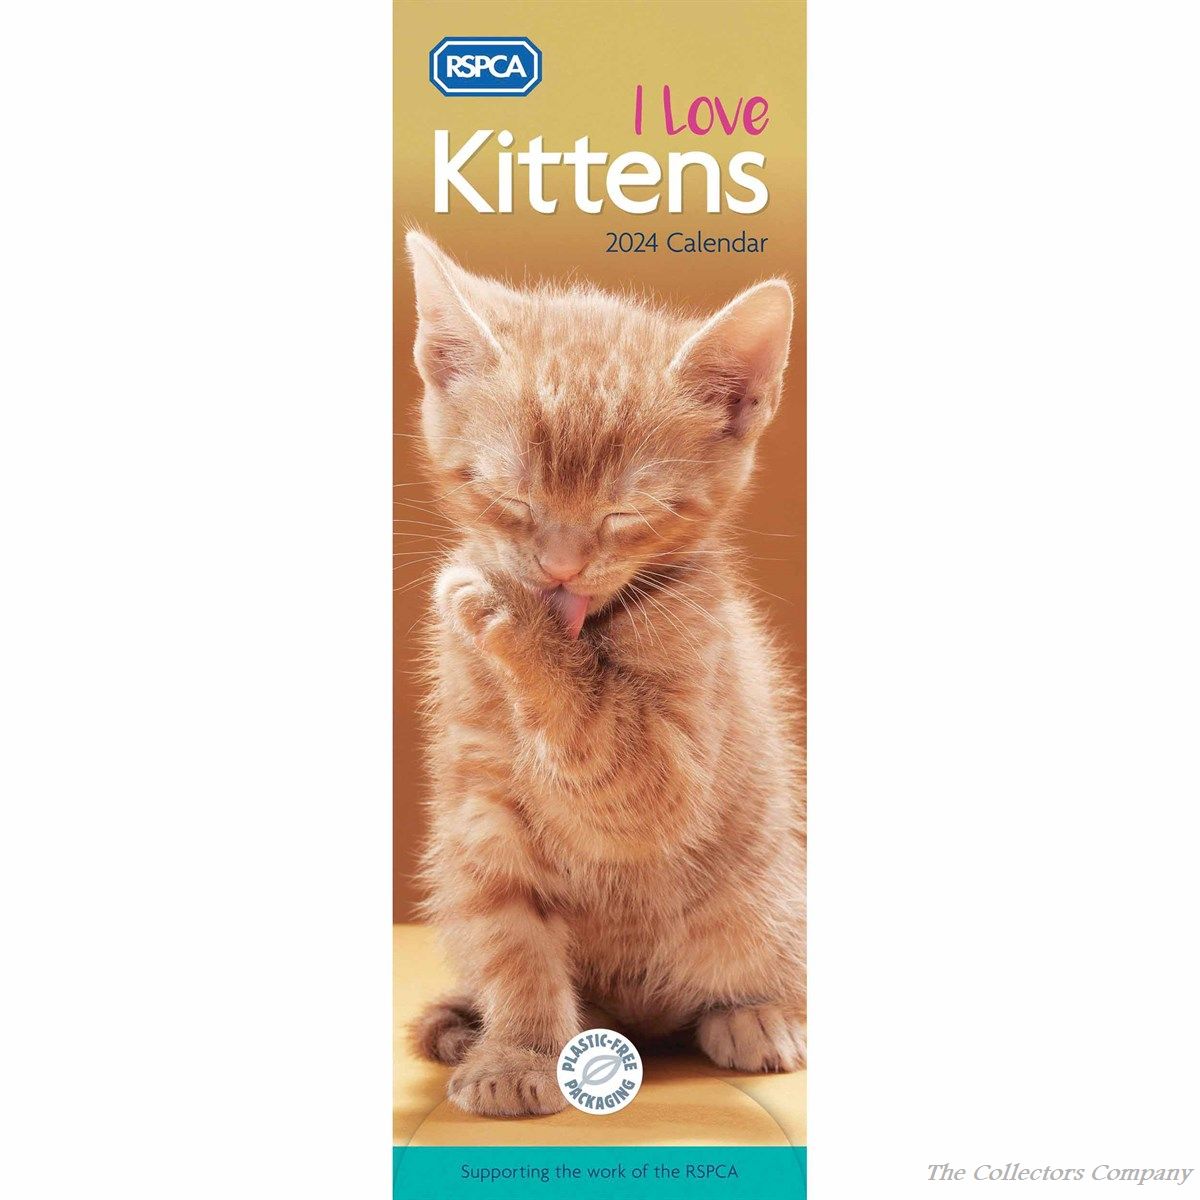 RSPCA, I Love Kittens 2024 Calendar 240458